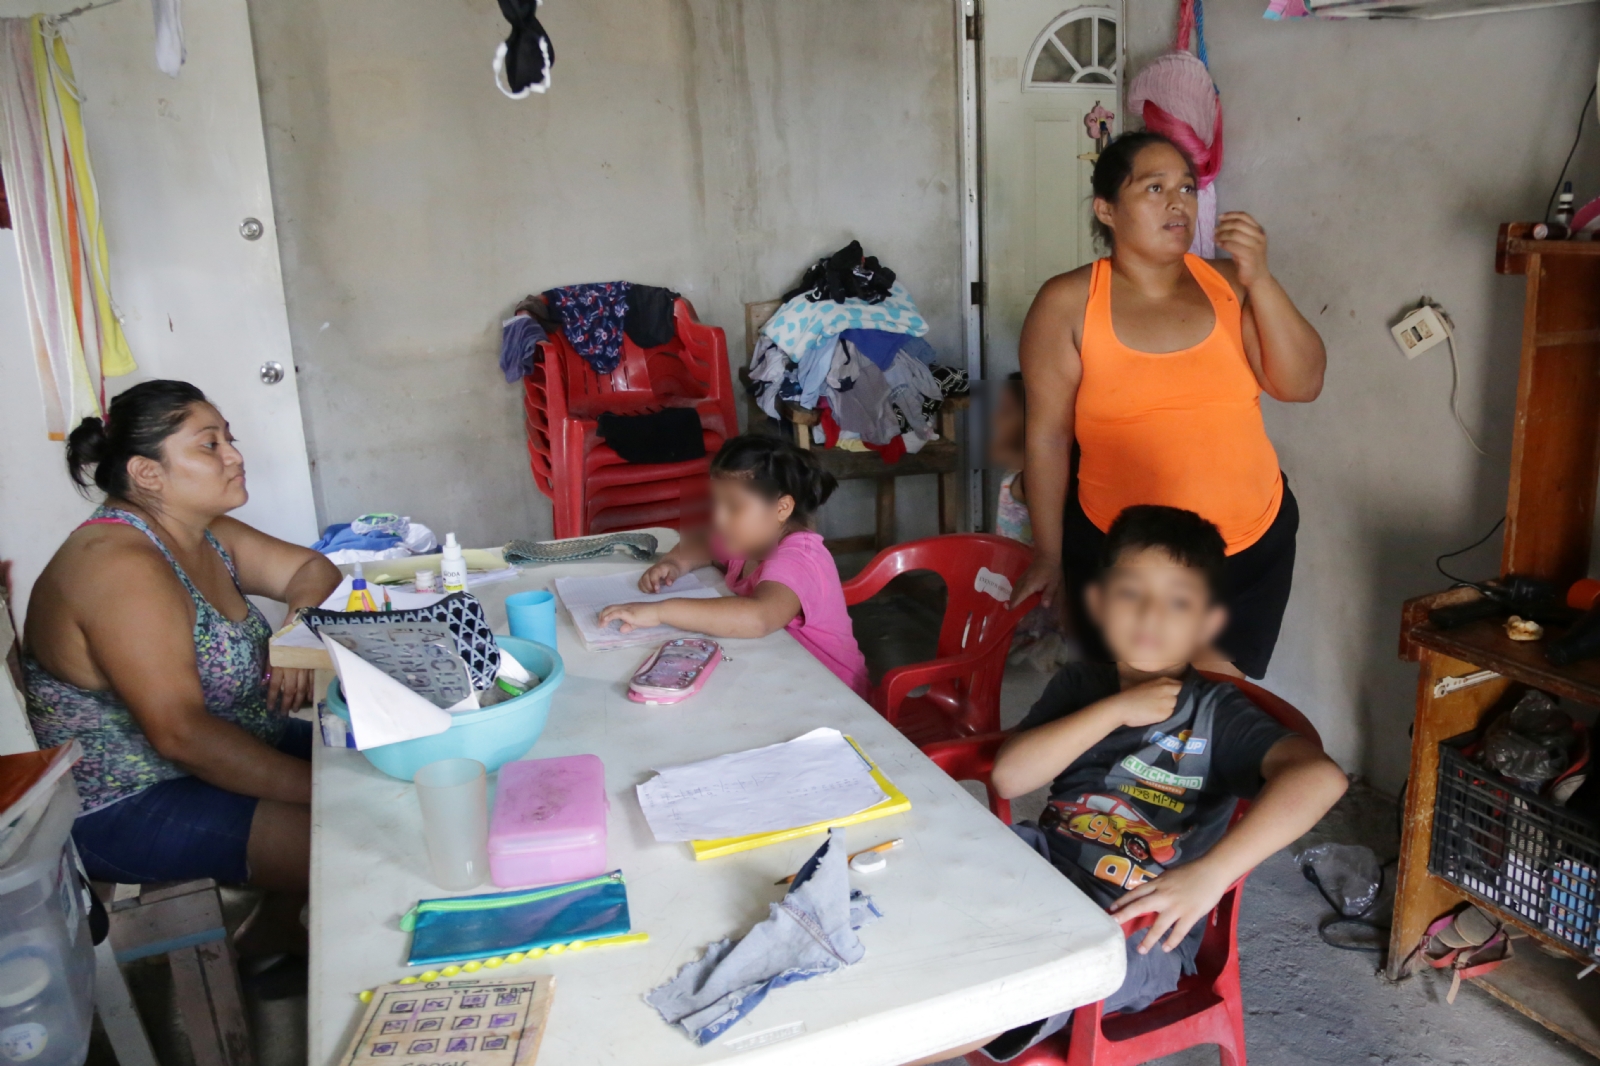 Intercambian alimentos para sobrevivir en Quintana Roo